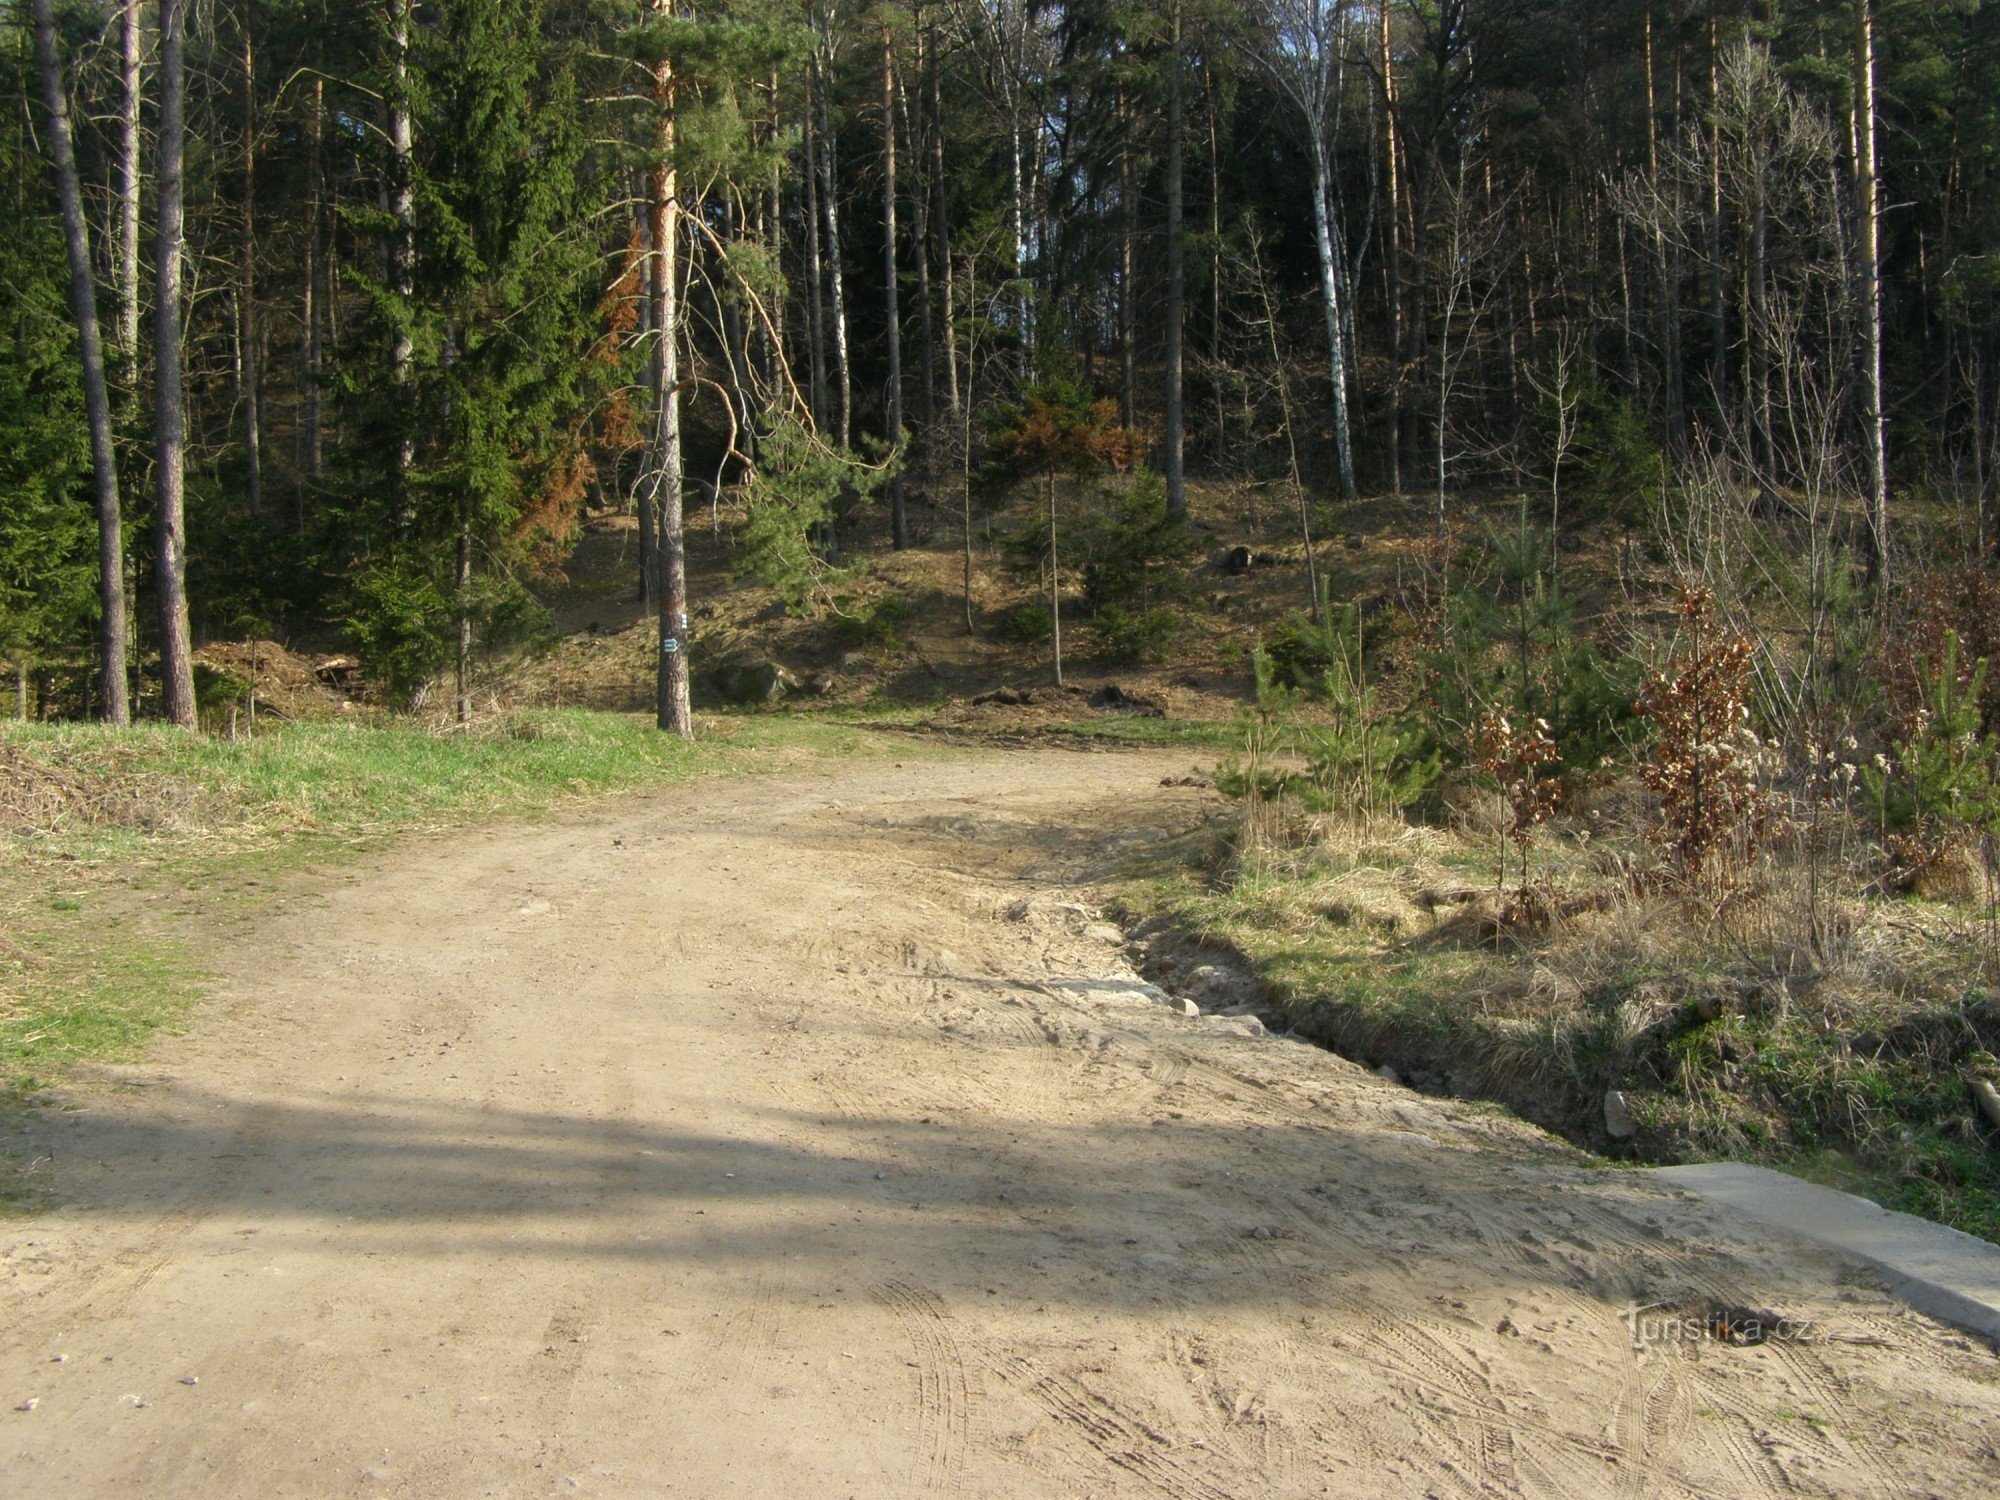 tourist crossroads Prachov - from Prívýšina